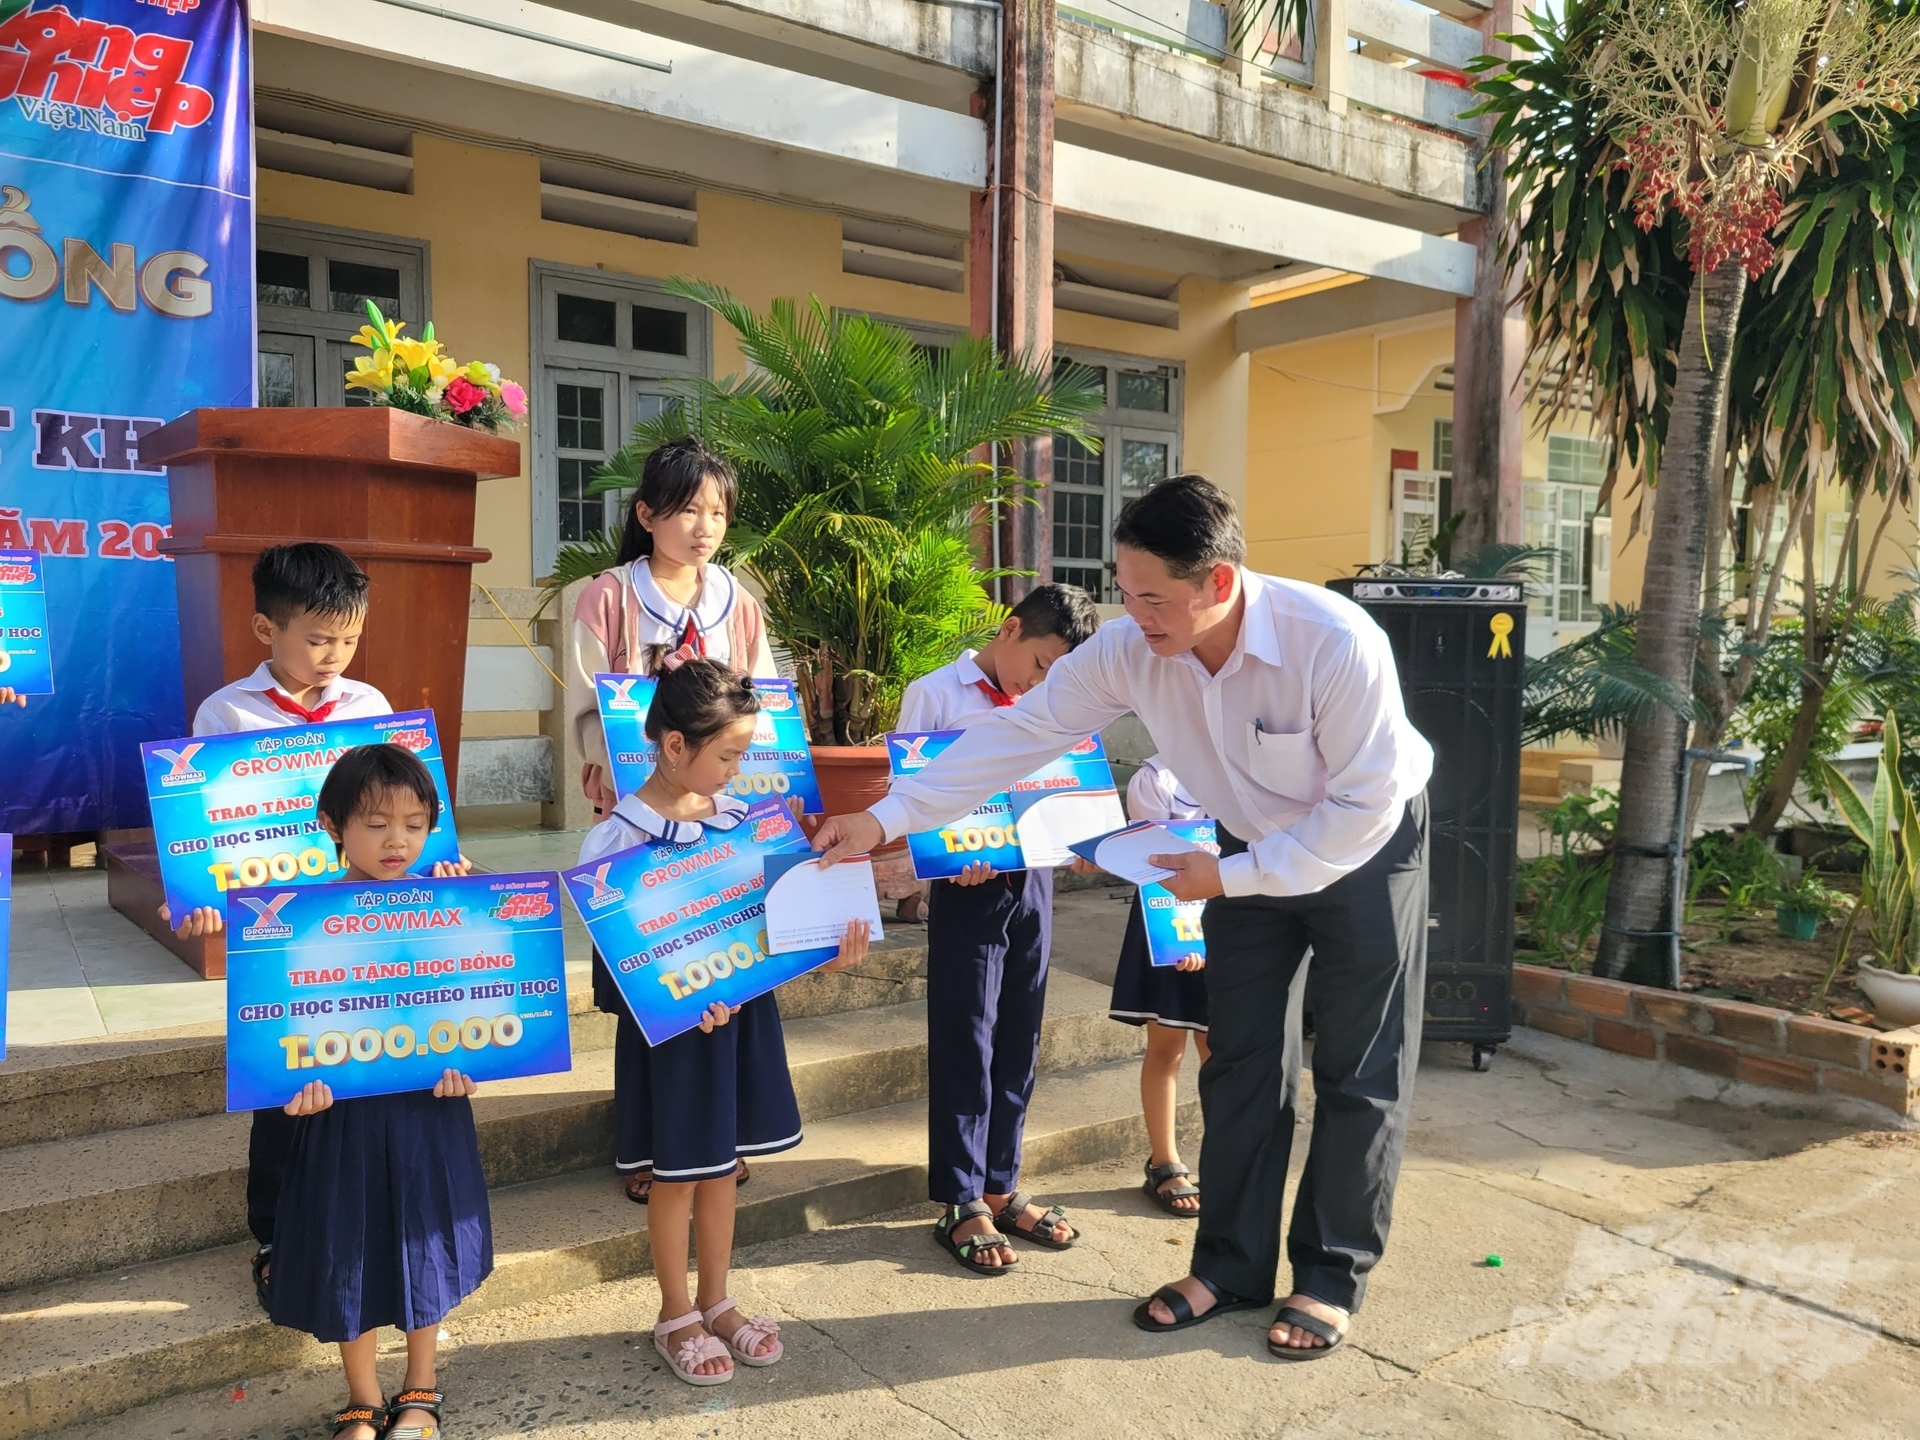 Các suất học bổng được trao đến tay các em học sinh nghèo vùng biển Tuy An (tỉnh Phú Yên). Ảnh: PC.